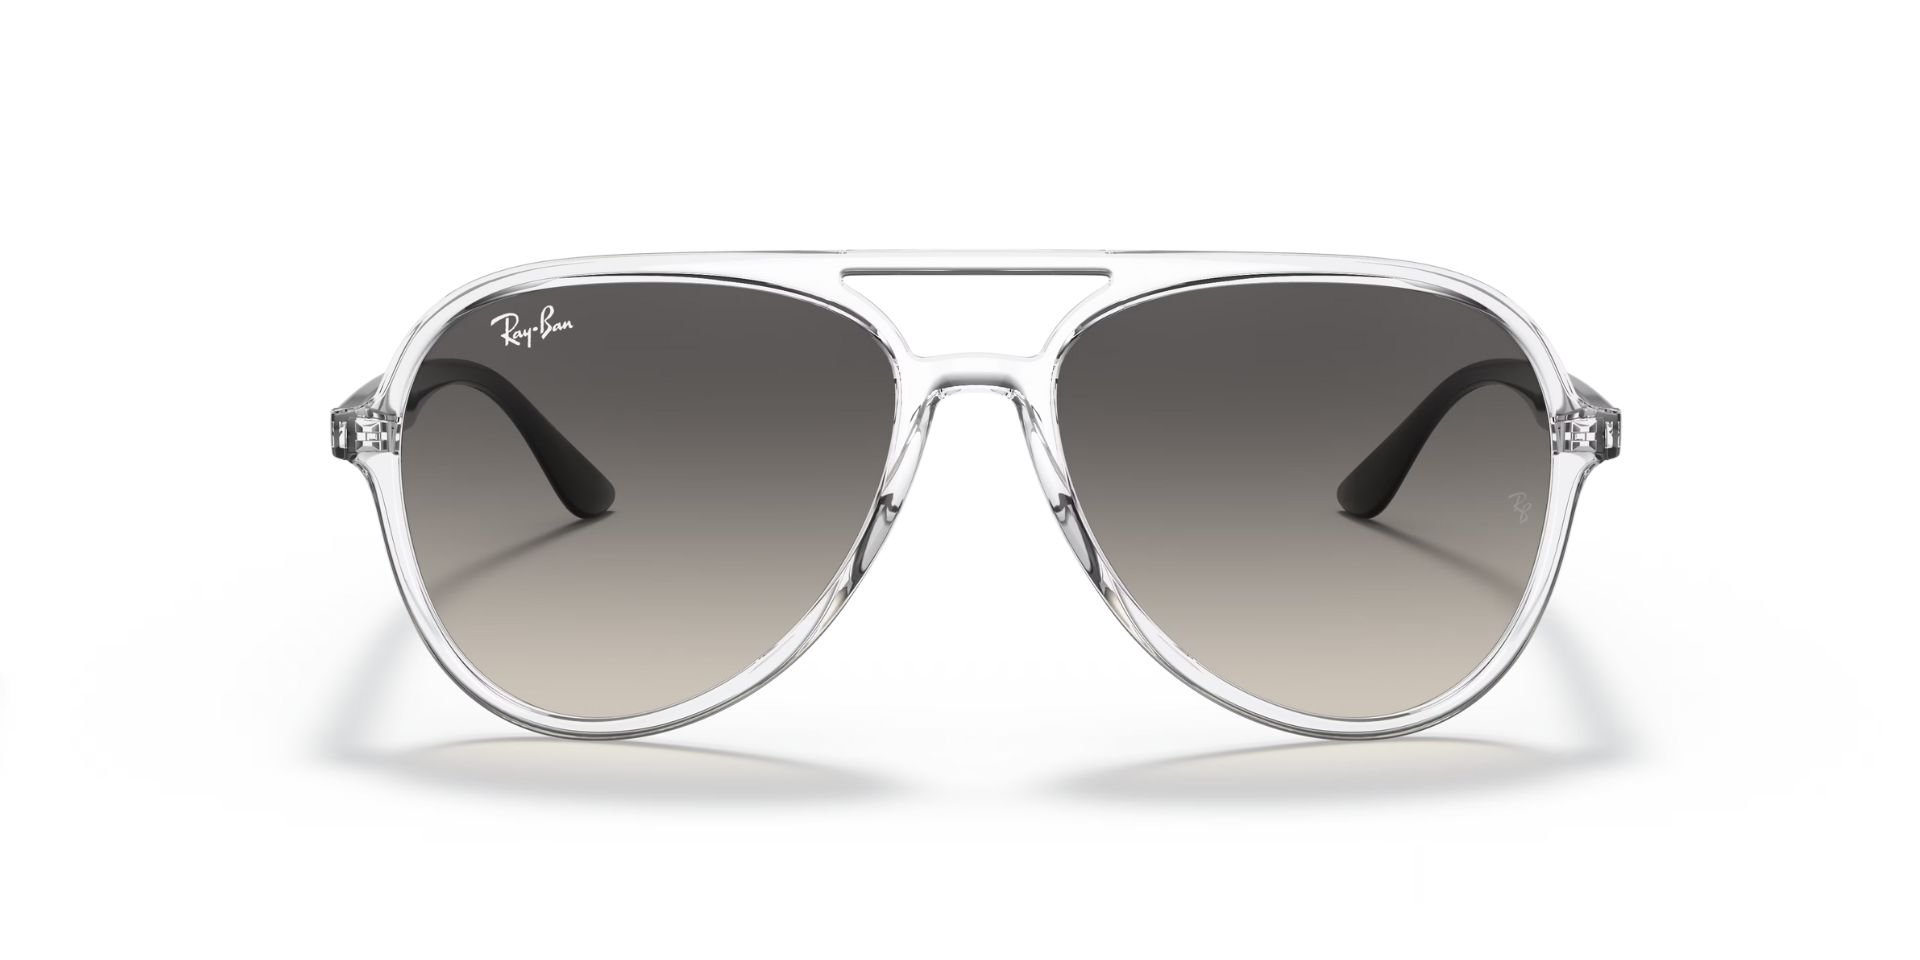 Buy Best branded+original+men+sunglasses Online At Cheap Price, branded +original+men+sunglasses & Qatar Shopping